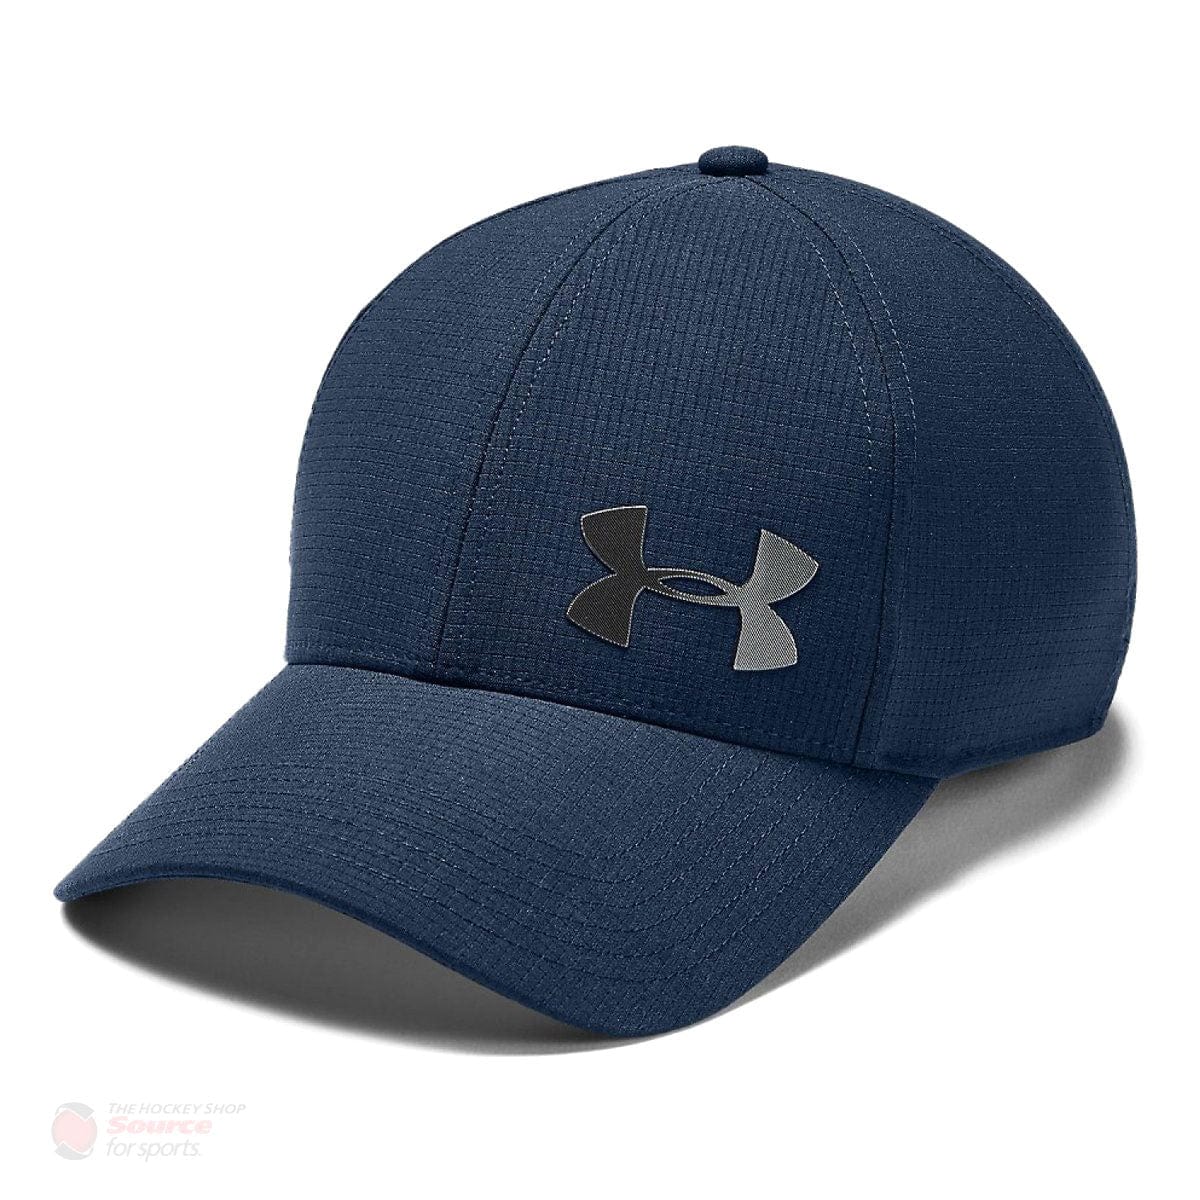 Under Armour ArmourVent Core 2.0 Flexfit Hat